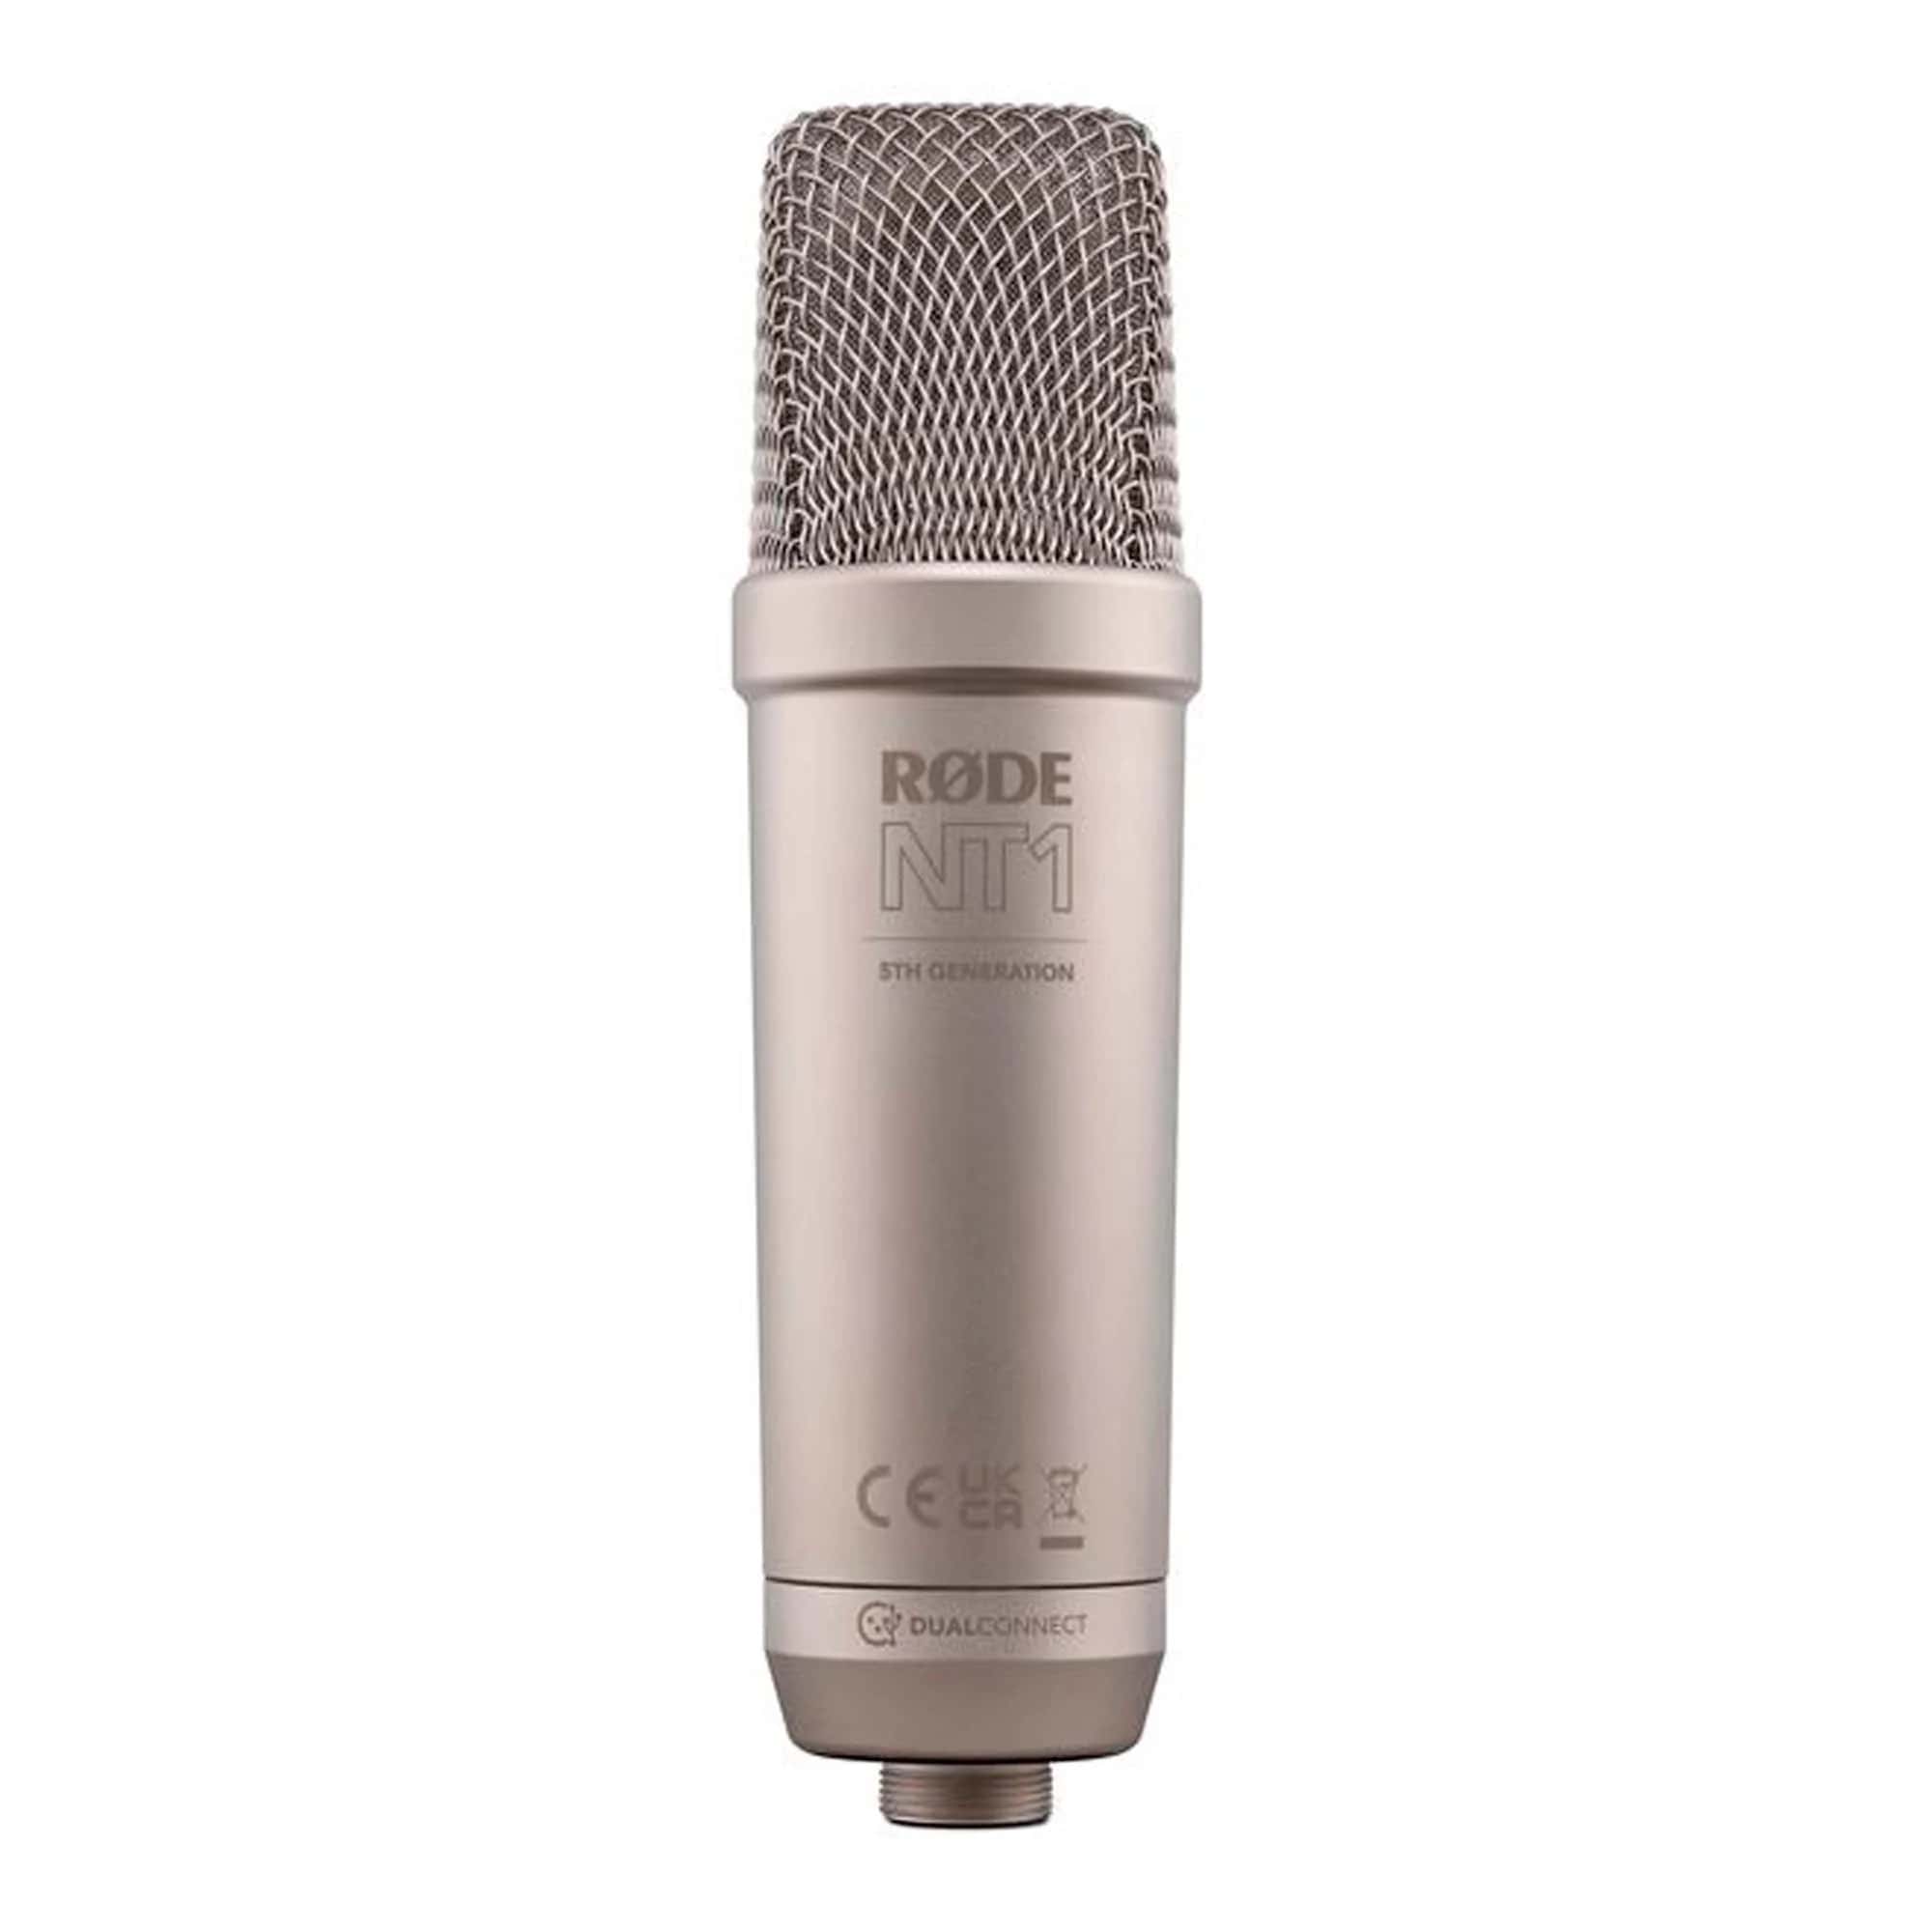 Студийные микрофоны Rode NT1 5th Generation Silver студийные микрофоны rode nt1 5th generation silver